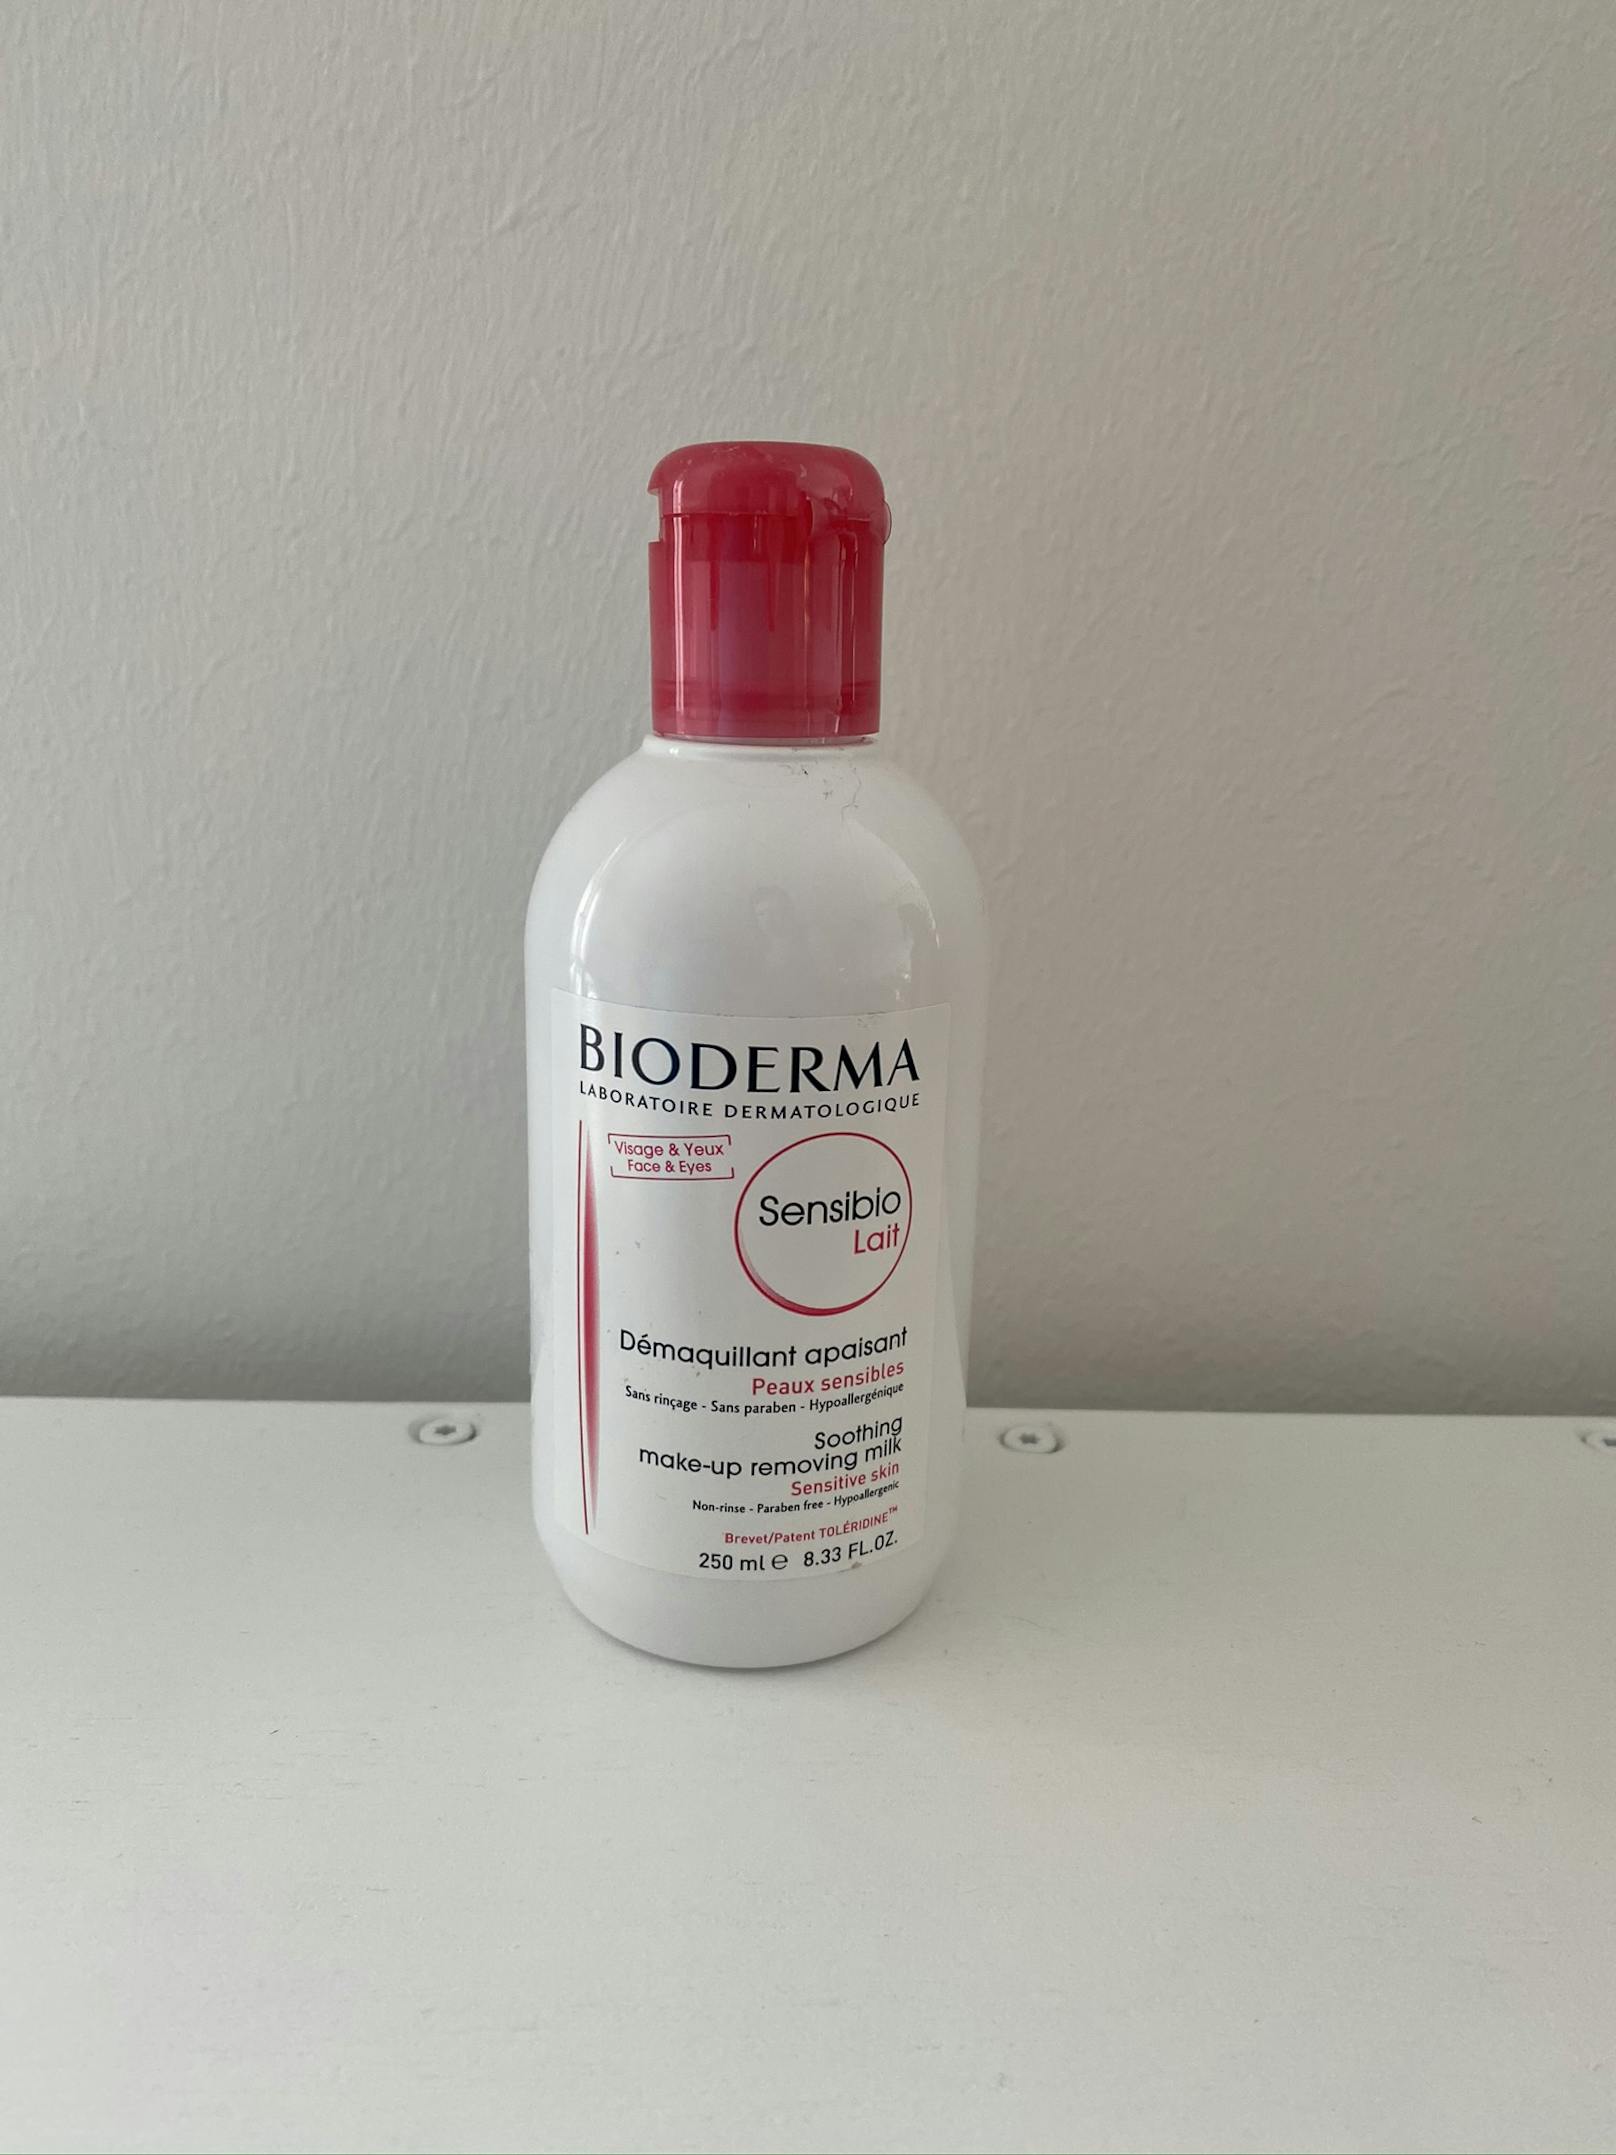 Die milde Reinigungsmilch des französischen Unternehmens Bioderma enfernt die Spuren des Tages und wirkt auf die Haut beruhigend, feuchtigkeitsspendend sowie entzündungshemmend.